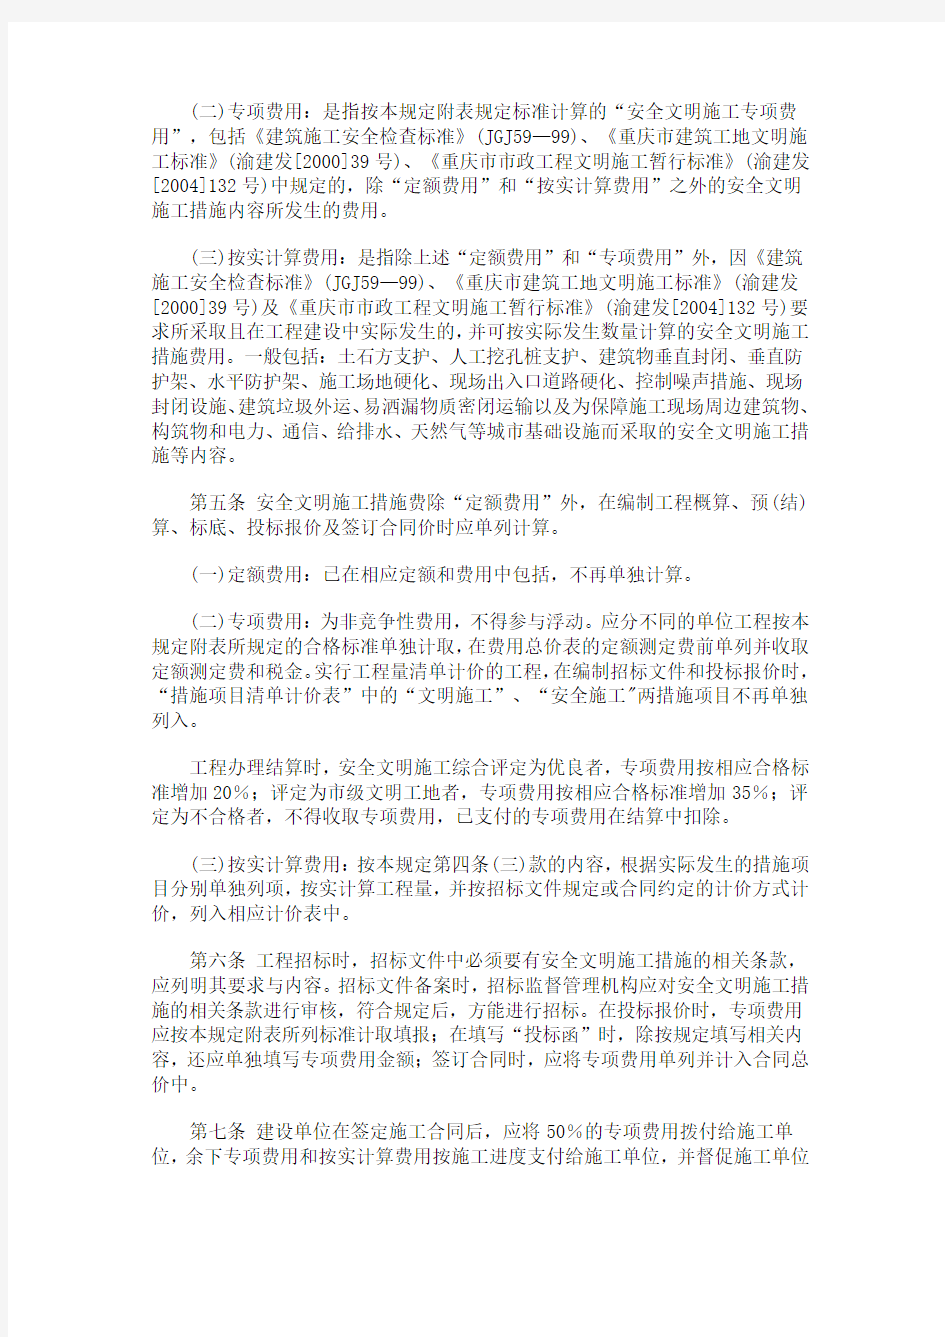 (安全文明)重庆市建设委员会文件渝建发[2006]177号